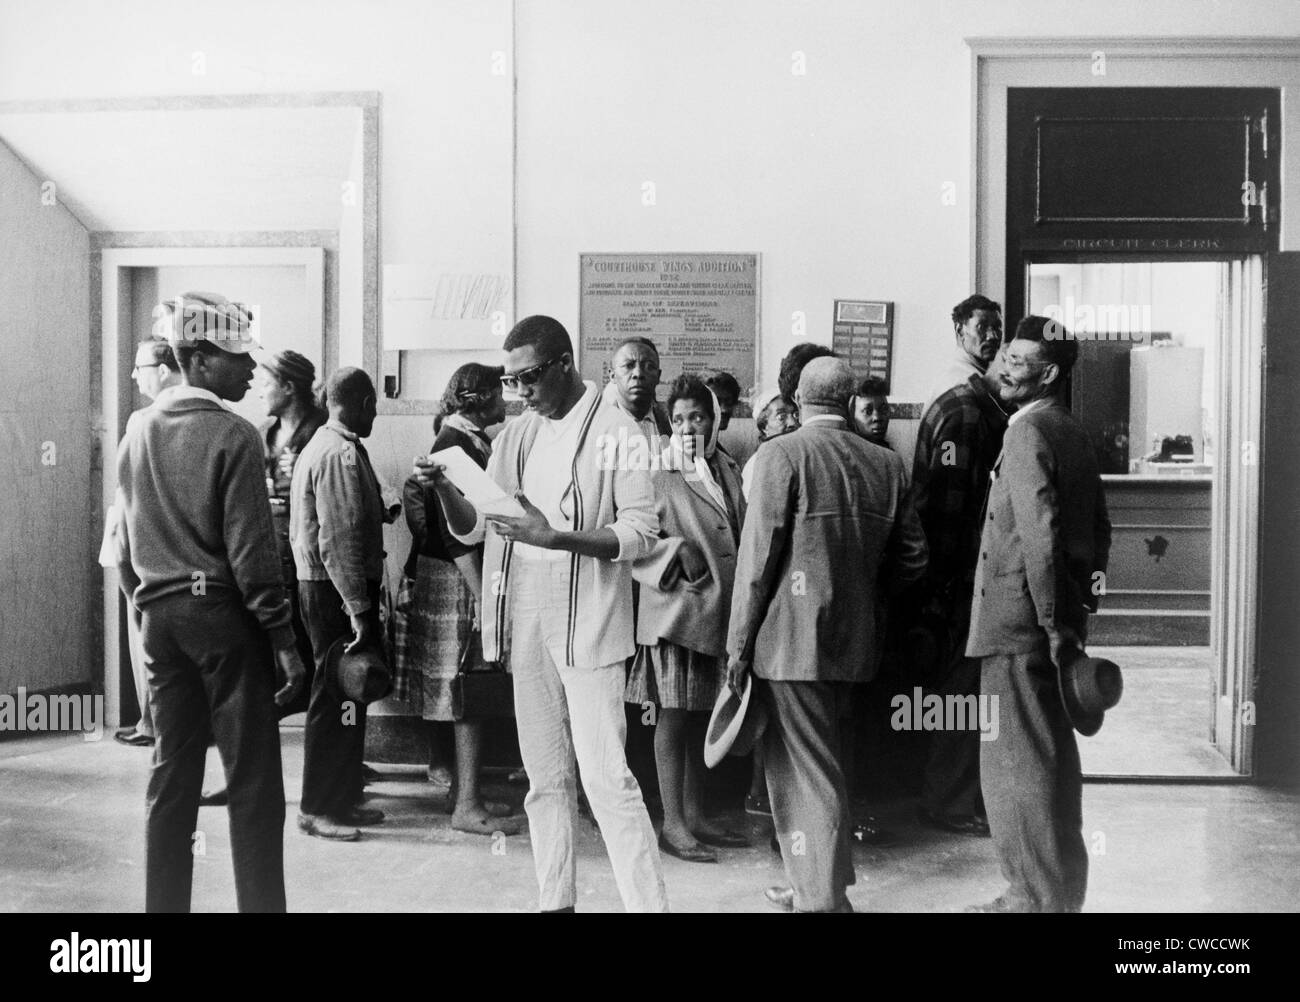 Campagne d'inscription. Les Afro-Américains d'attente à la Cour de circuit pour s'inscrire pour voter au Mississippi. Ca. Années 1960. Banque D'Images